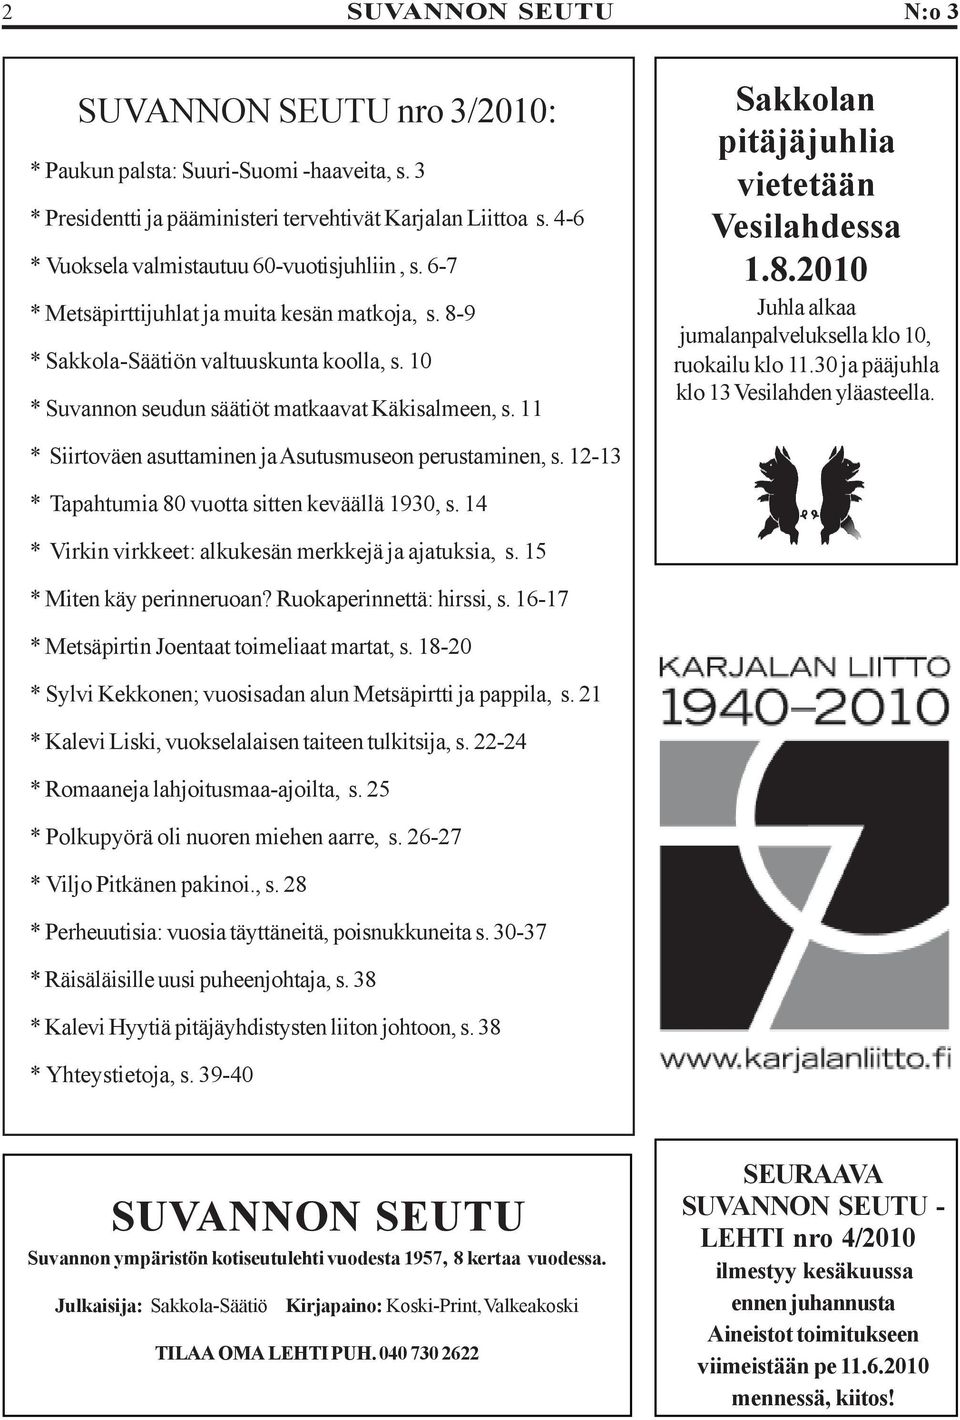 11 * Siirtoväen asuttaminen ja Asutusmuseon perustaminen, s. 12-13 * Tapahtumia 80 vuotta sitten keväällä 1930, s. 14 * Virkin virkkeet: alkukesän merkkejä ja ajatuksia, s.